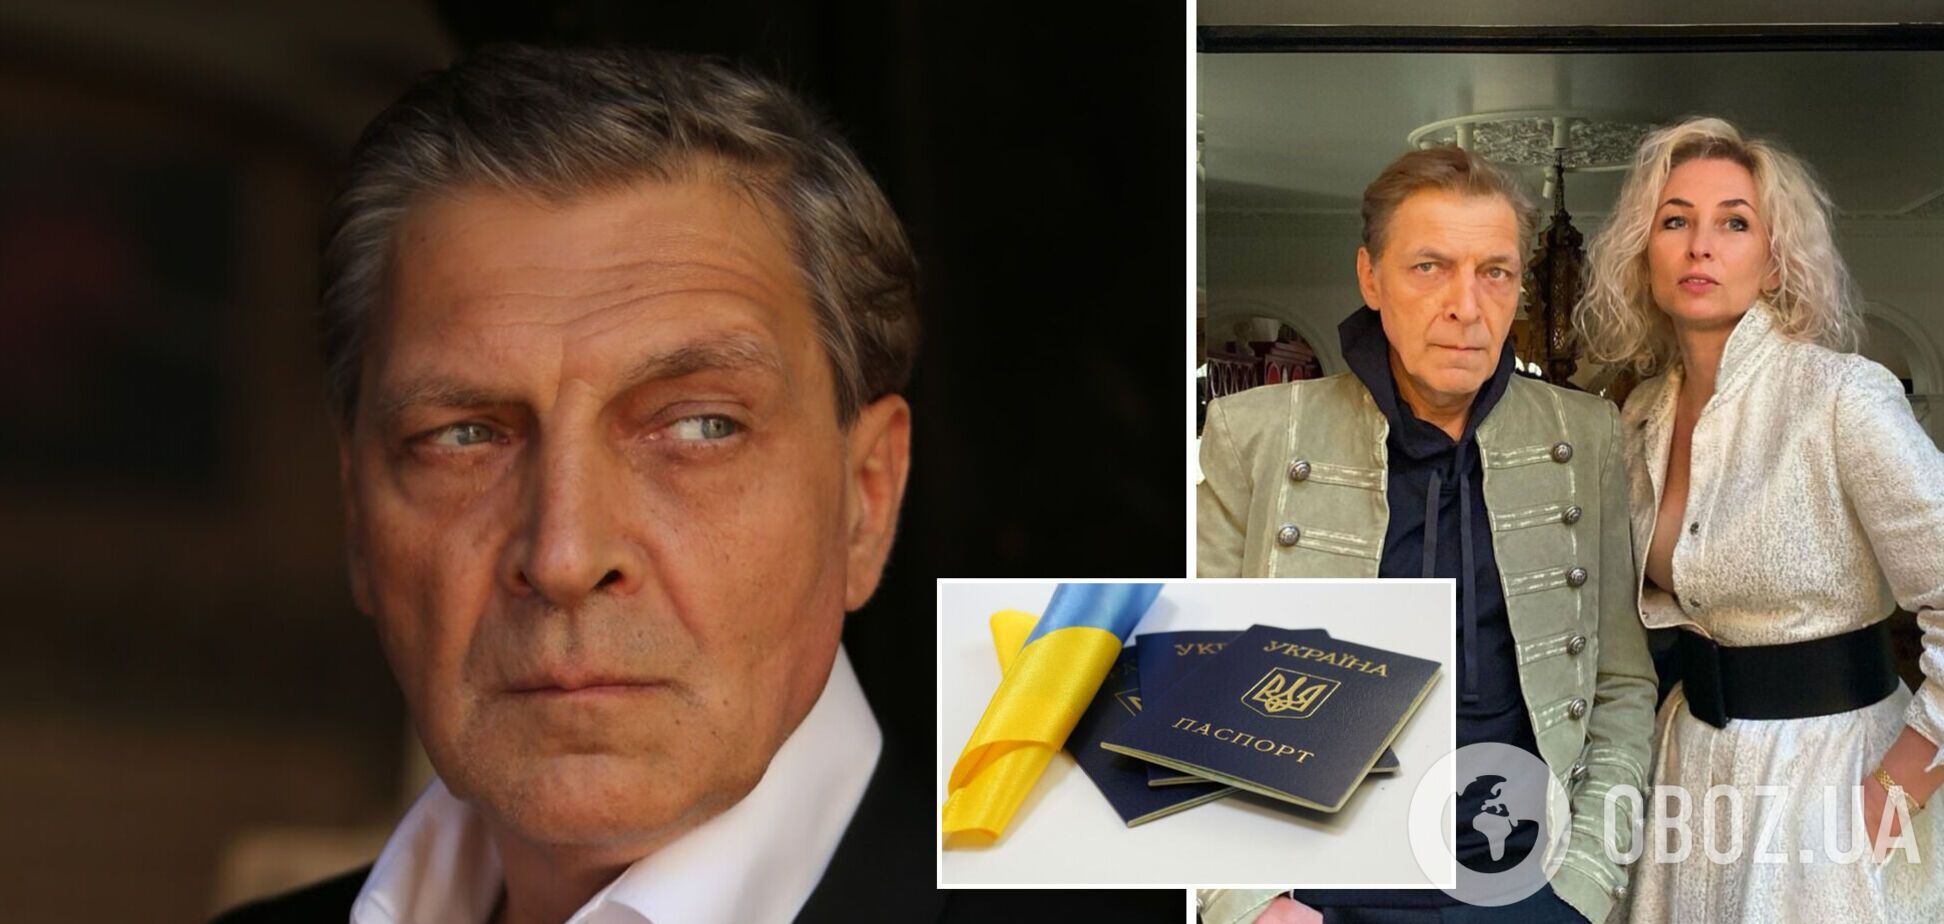 Невзоров и его супруга получили гражданство Украины: в сети показали документ